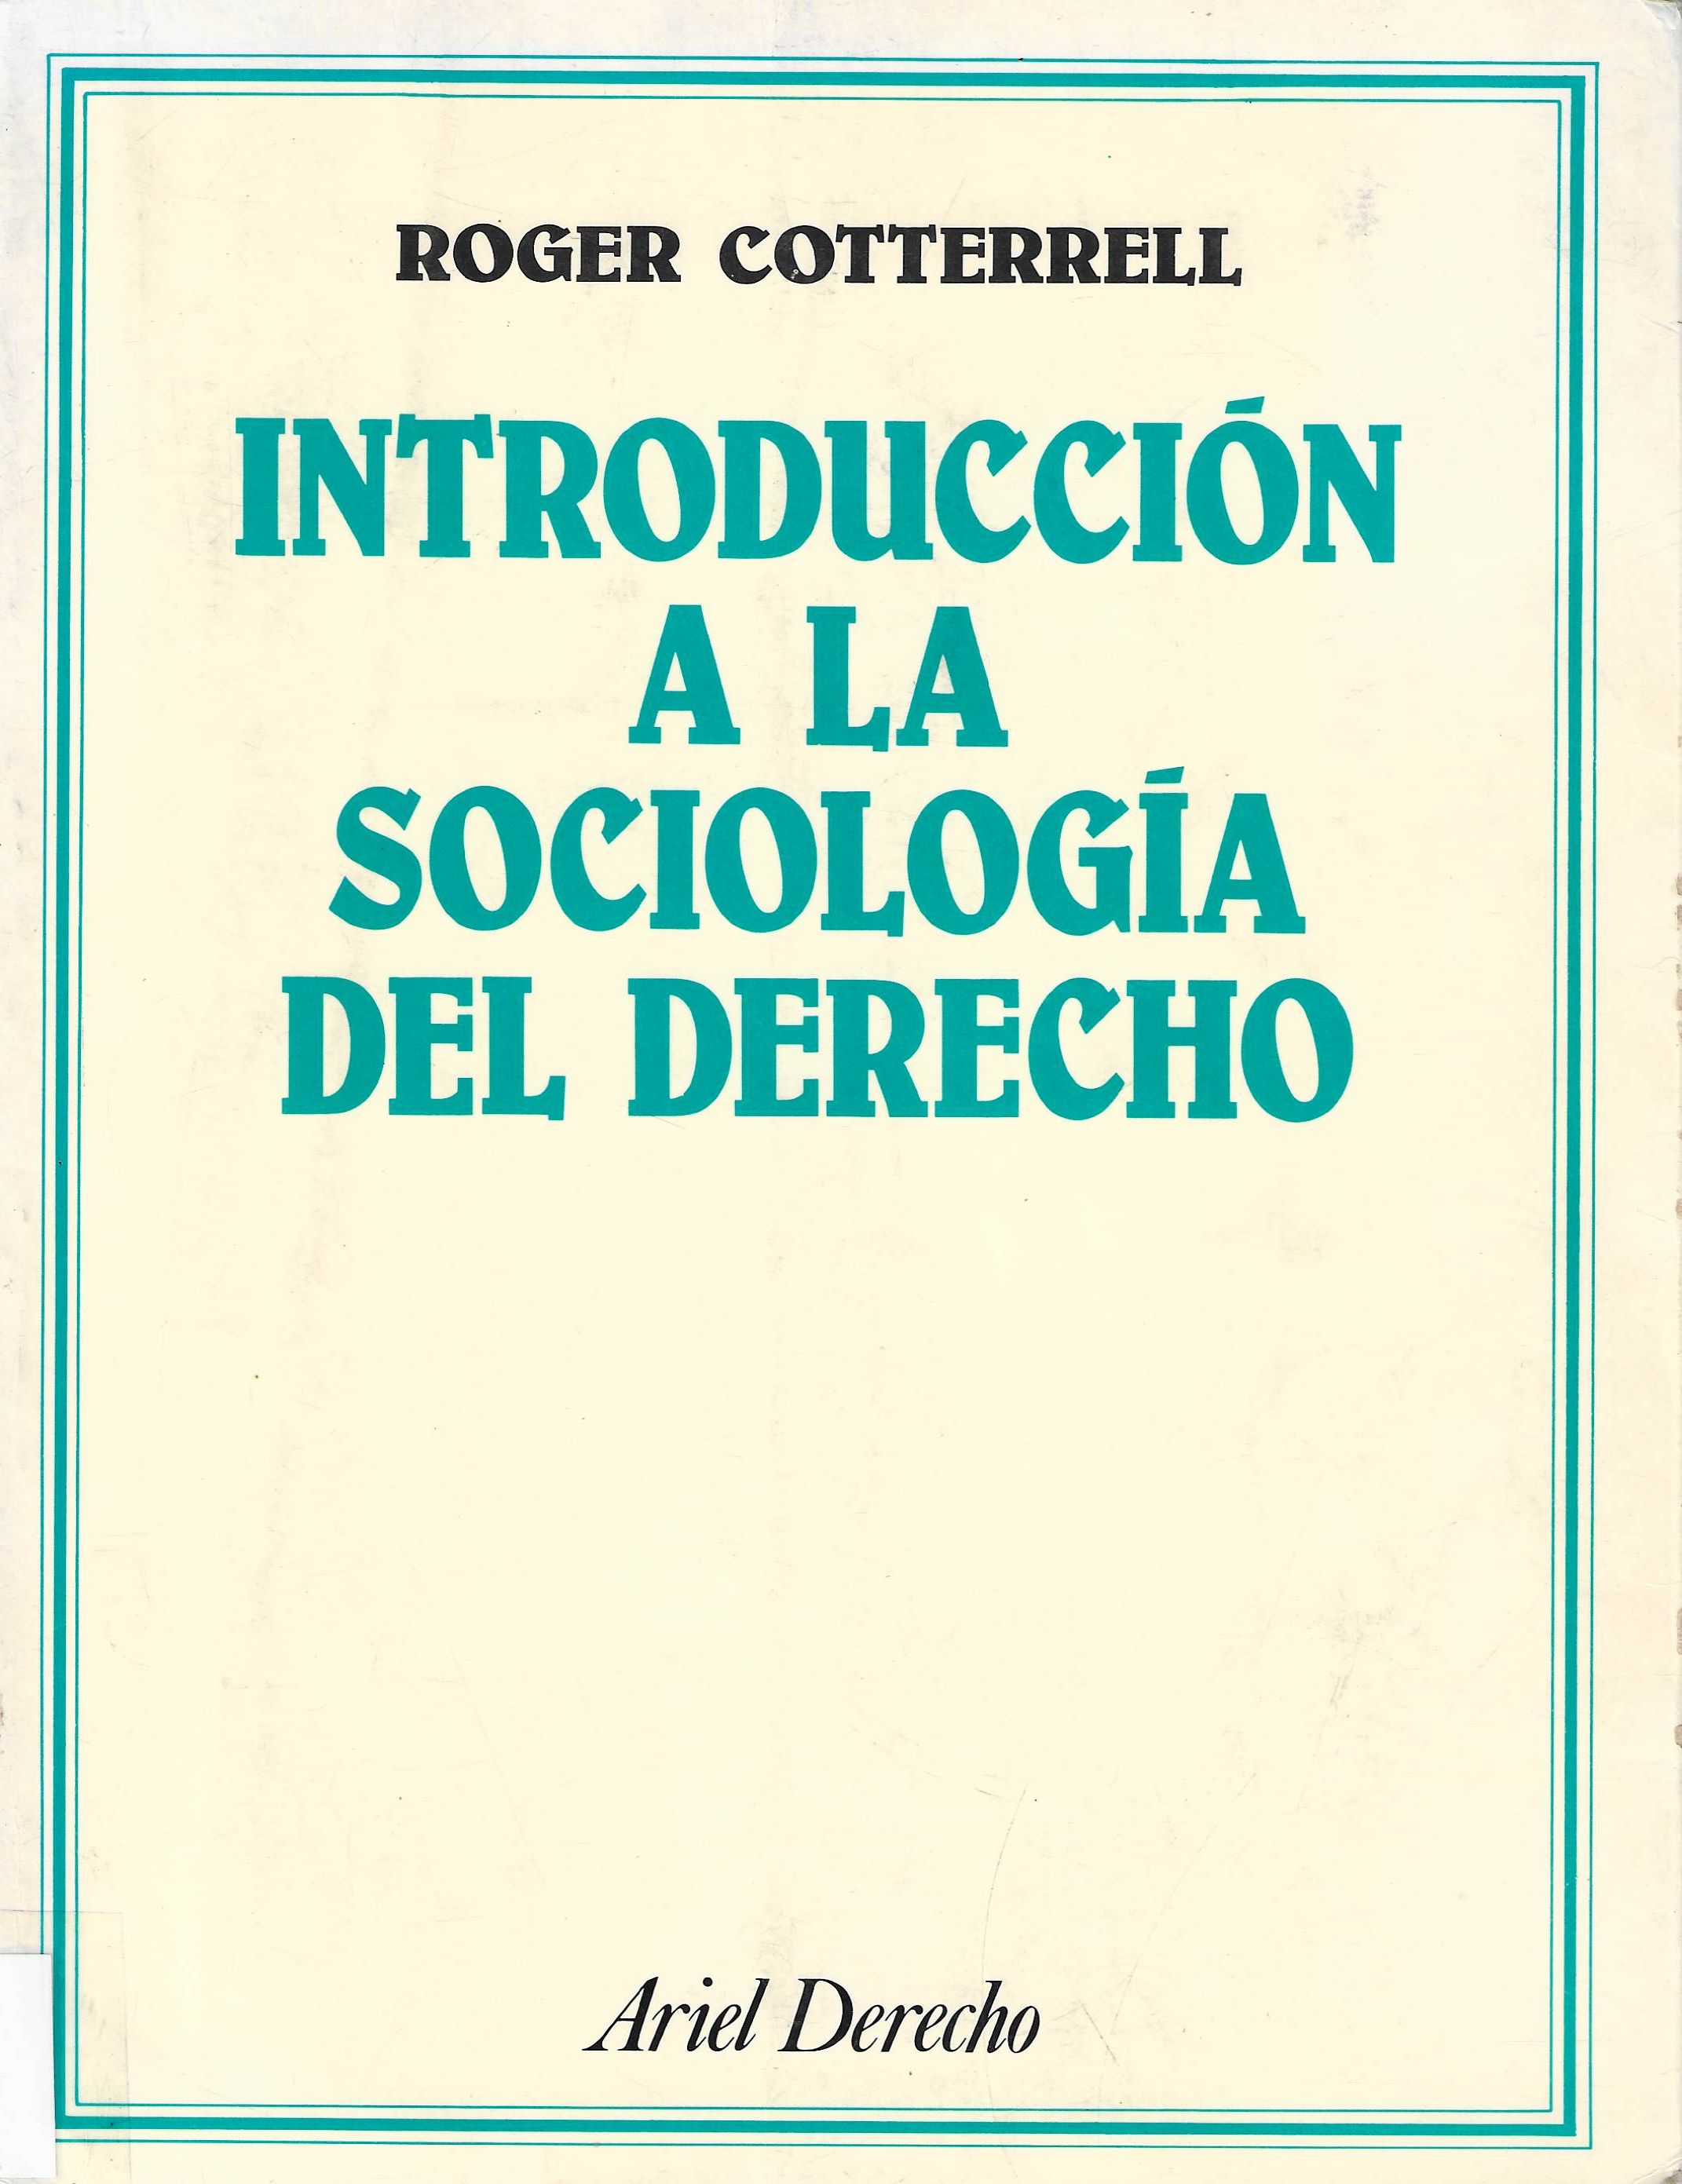 Imagen de portada del libro Introducción a la sociología del derecho